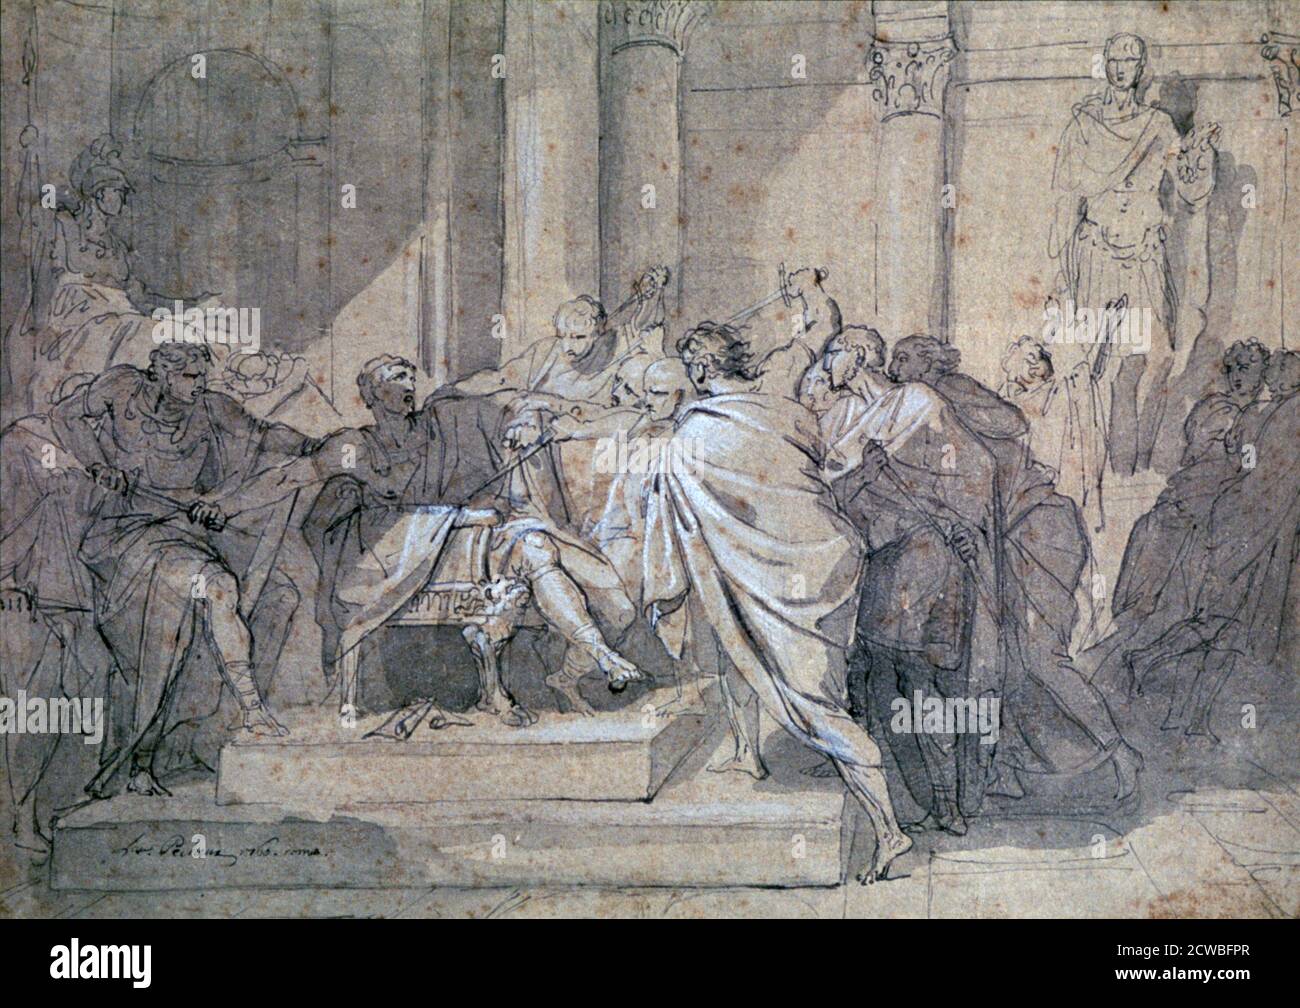 Ermordung von Julius Caesar', c1749-1821. Künstler: Laurent Pecheux. Laurent Pecheux (1729-1821) war ein in Frankreich geborener Maler, der in Rom und Norditalien tätig war und im neoklassizistischen Stil malte. Stockfoto